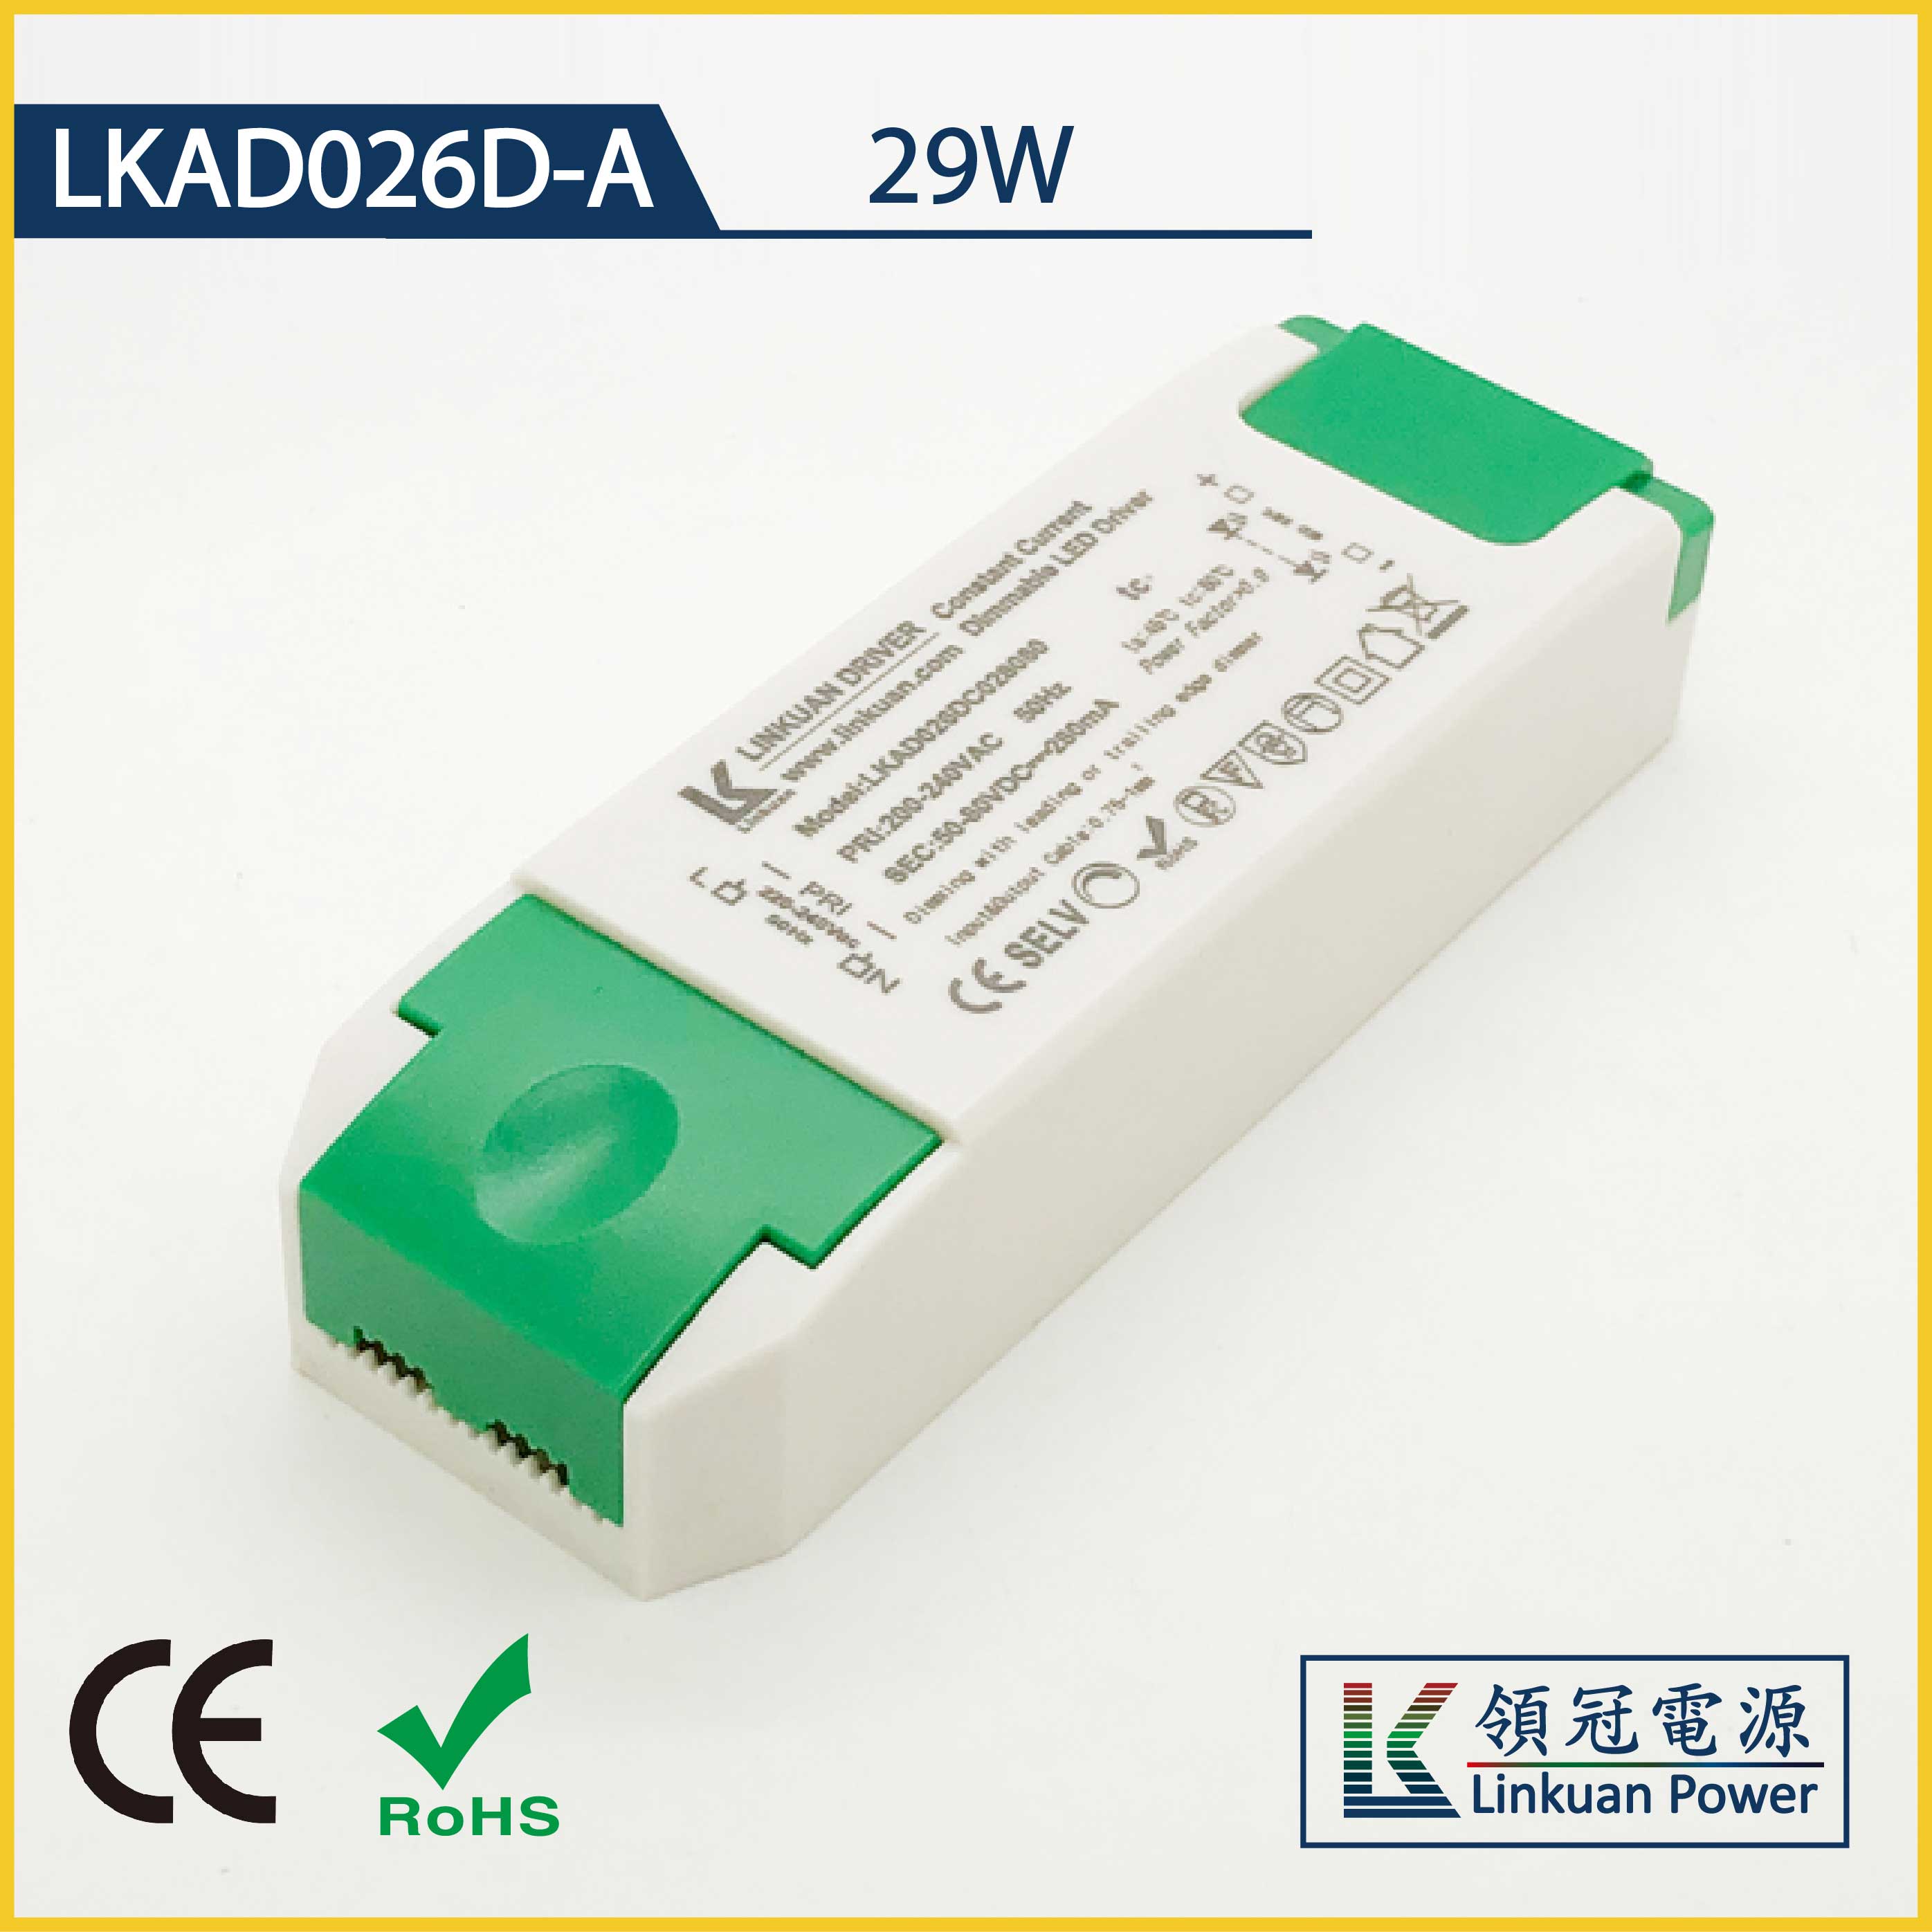 LKAD026D-A 29W 5-42V 700mA CCT Adjusting LED drivers